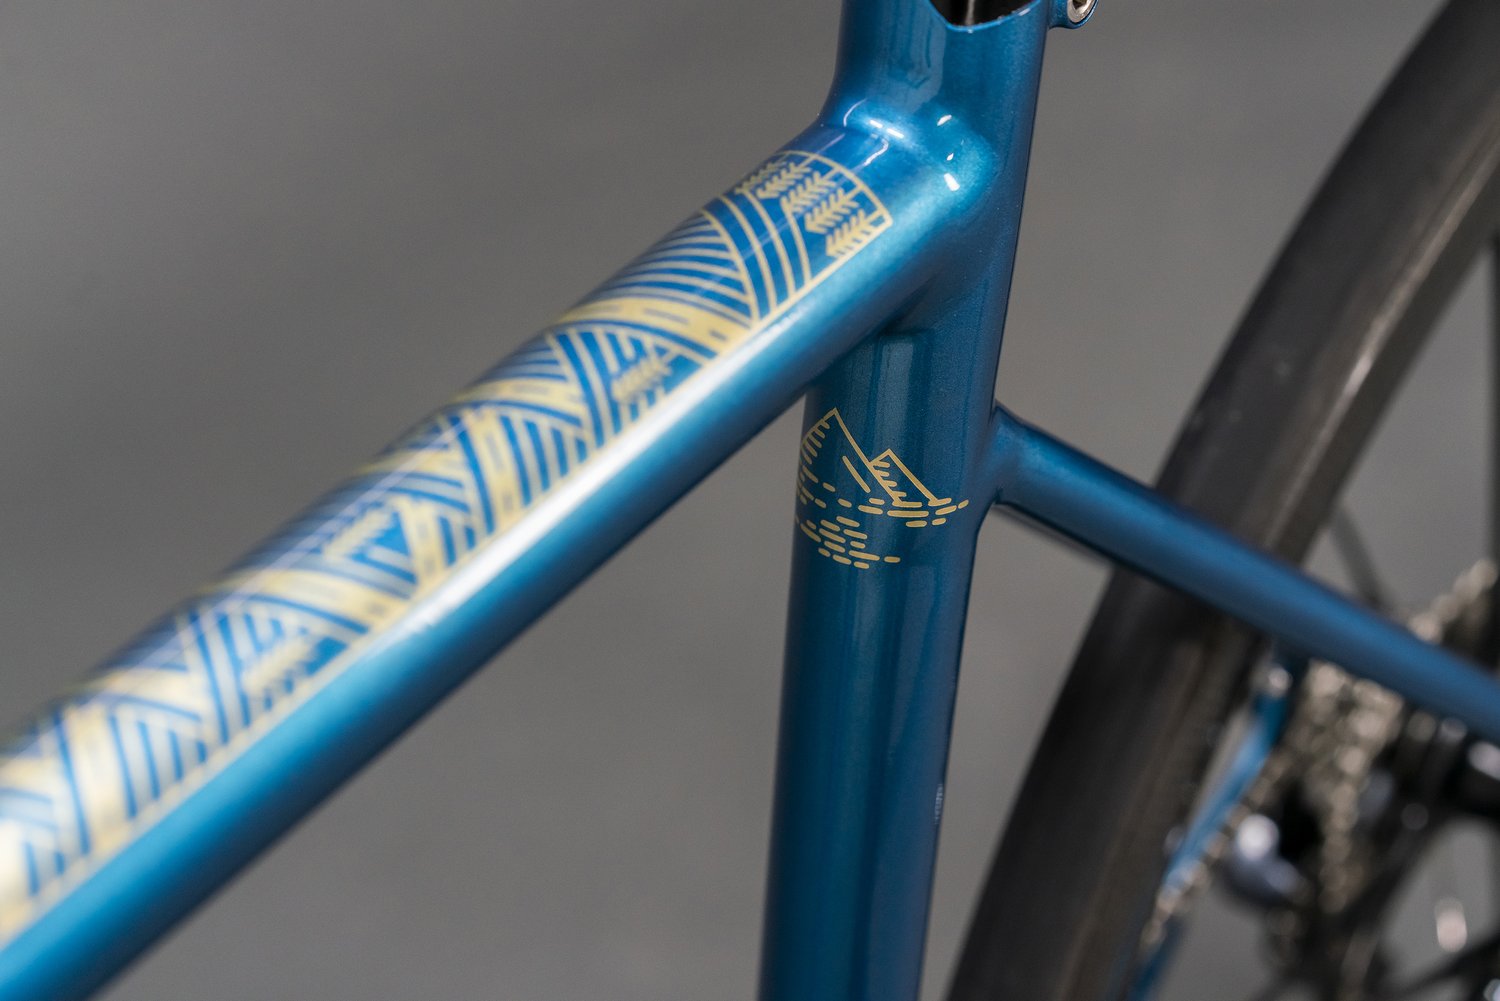 Kit de réparation vélo (Bleu, Acier au carbone, 353g) comme articles  publicitaires Sur